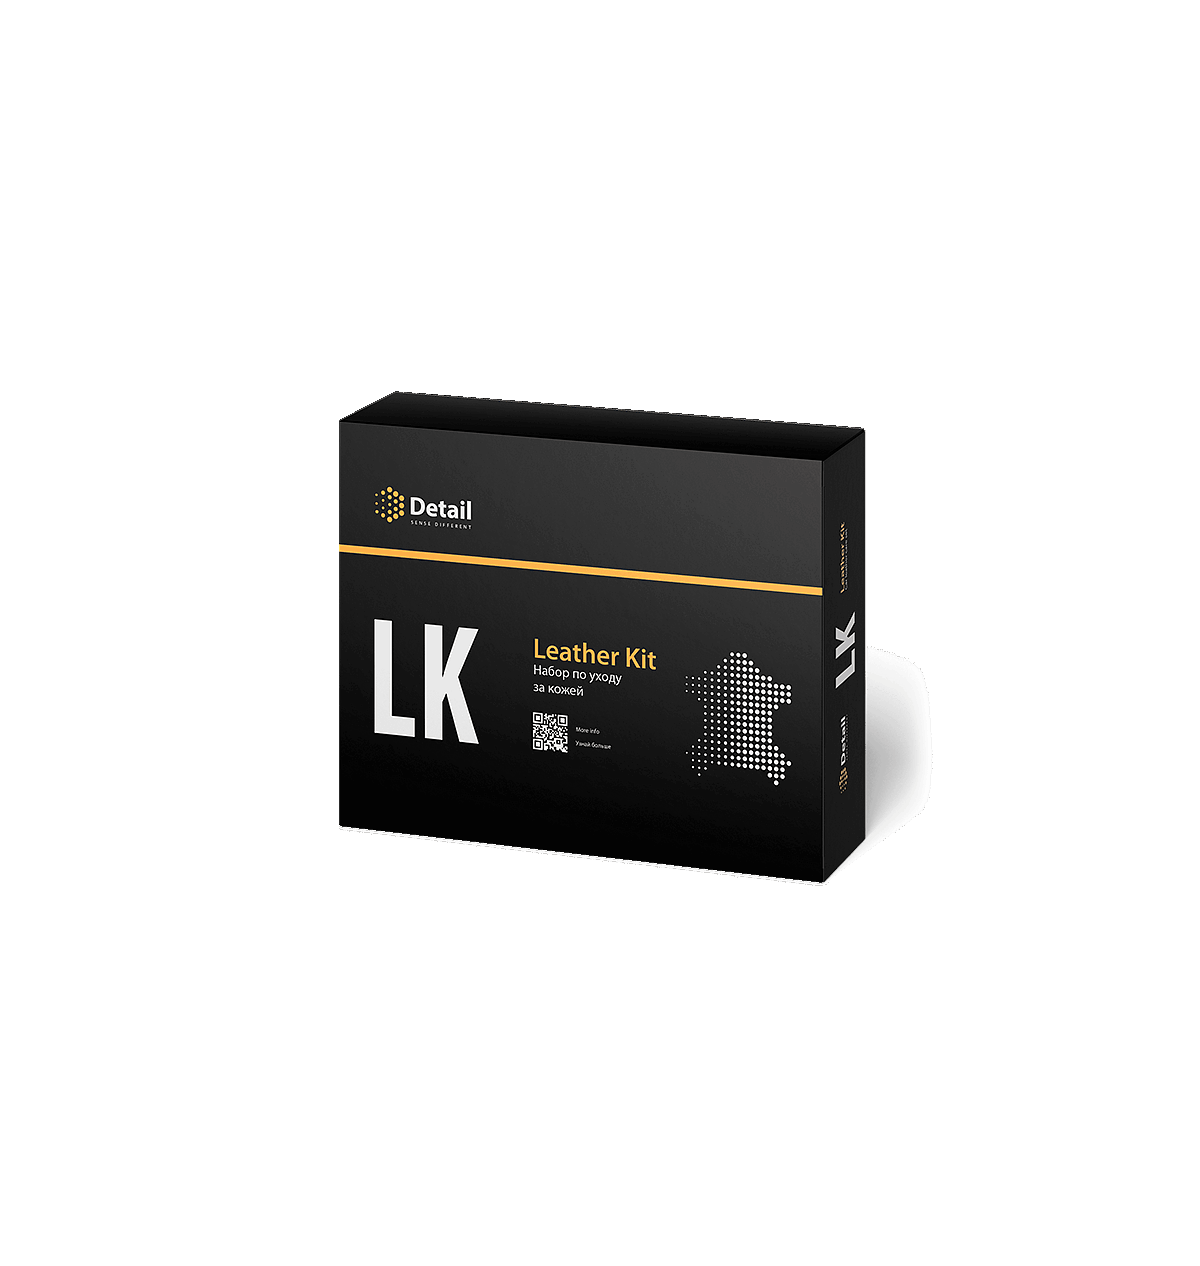 Набор для очистки кожи LK Leather Kit DT-0171. Набор detail LK "Leather Kit". LK "Leather Kit" detail DT-0171. Набор для очистки detail LK. Detail lk